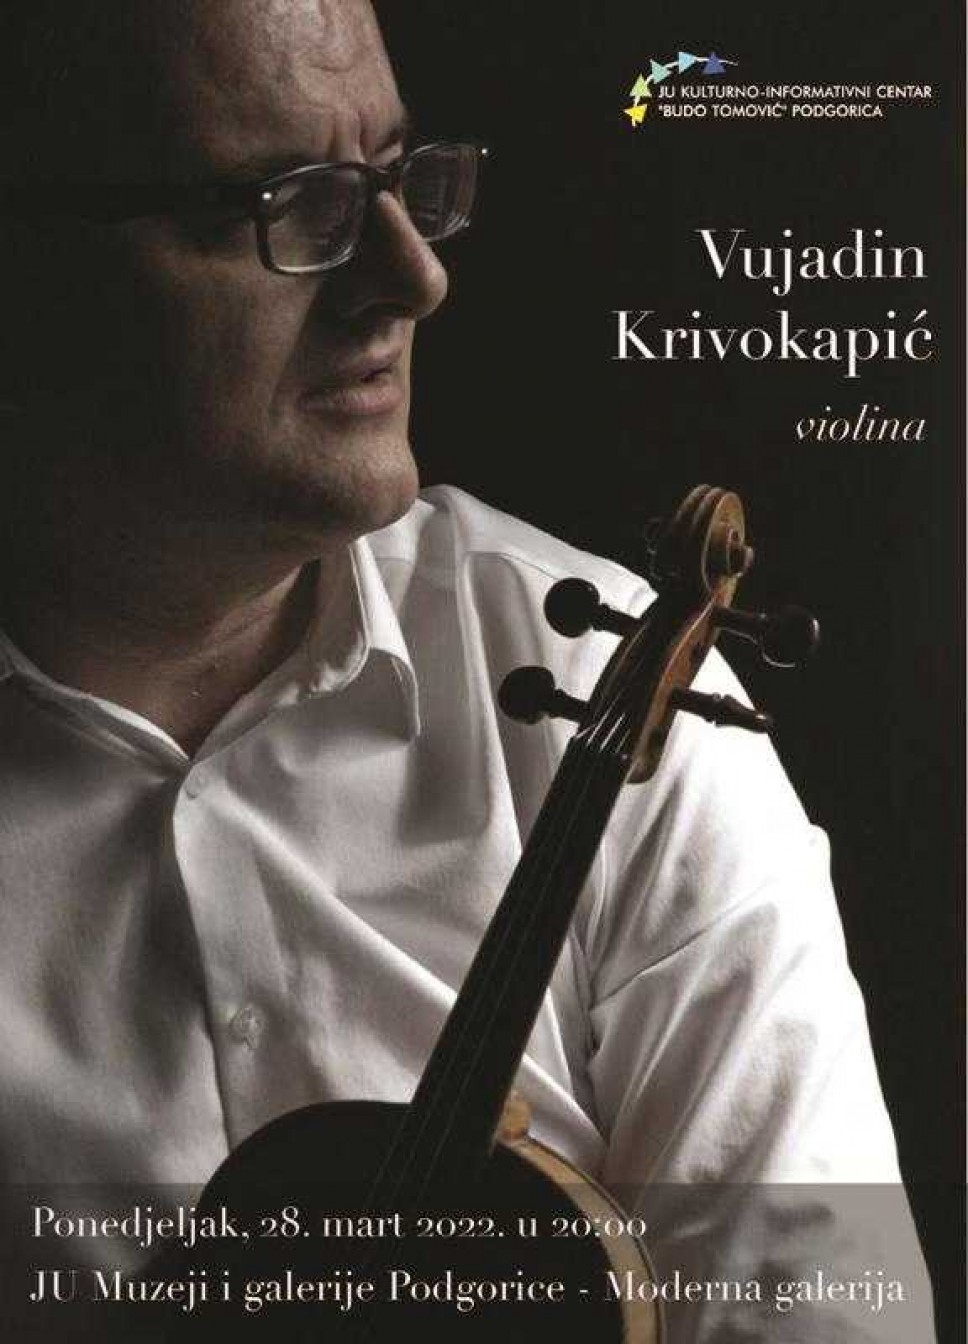 Koncert violiniste Vujadina Krivokapića u KIC-u